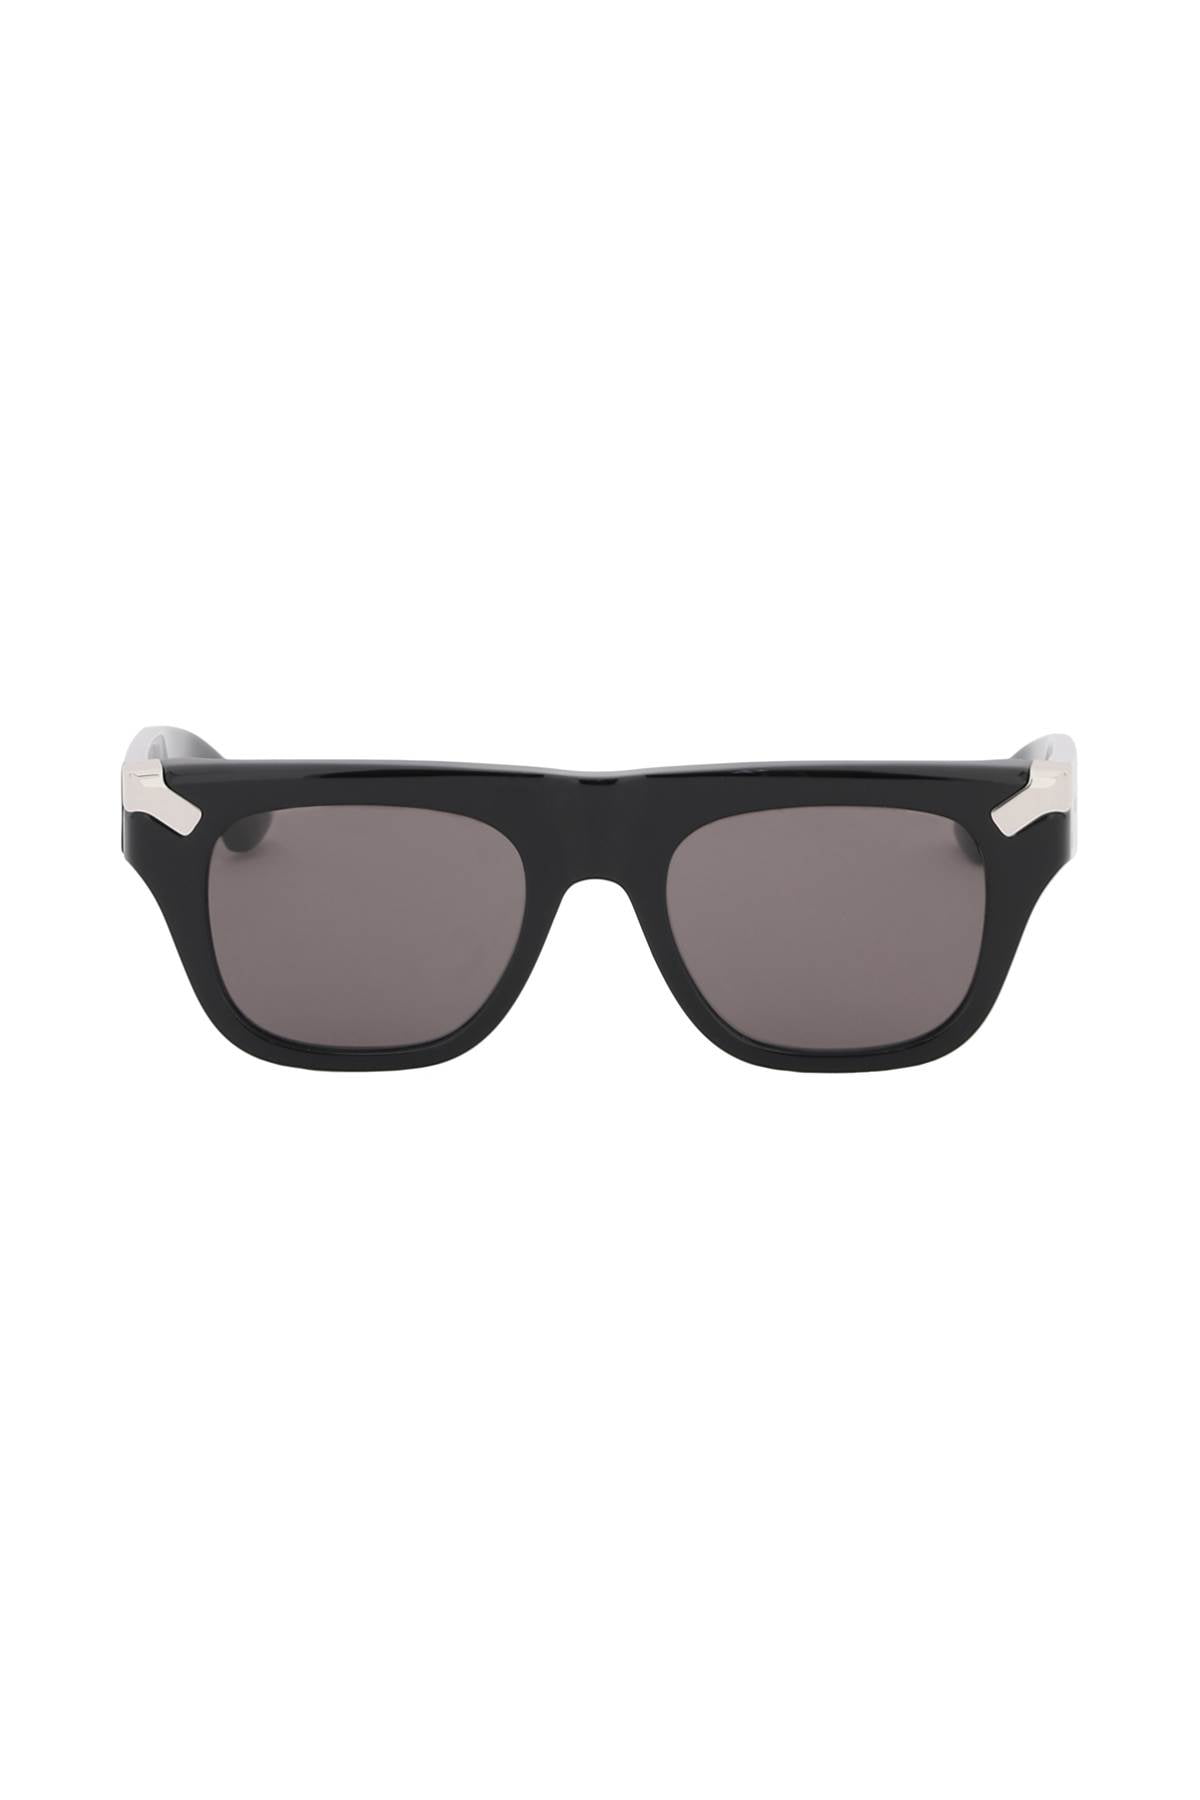 Alexander Mcqueen Punk Rivet Mask Sunglasses Men - Walmart.com